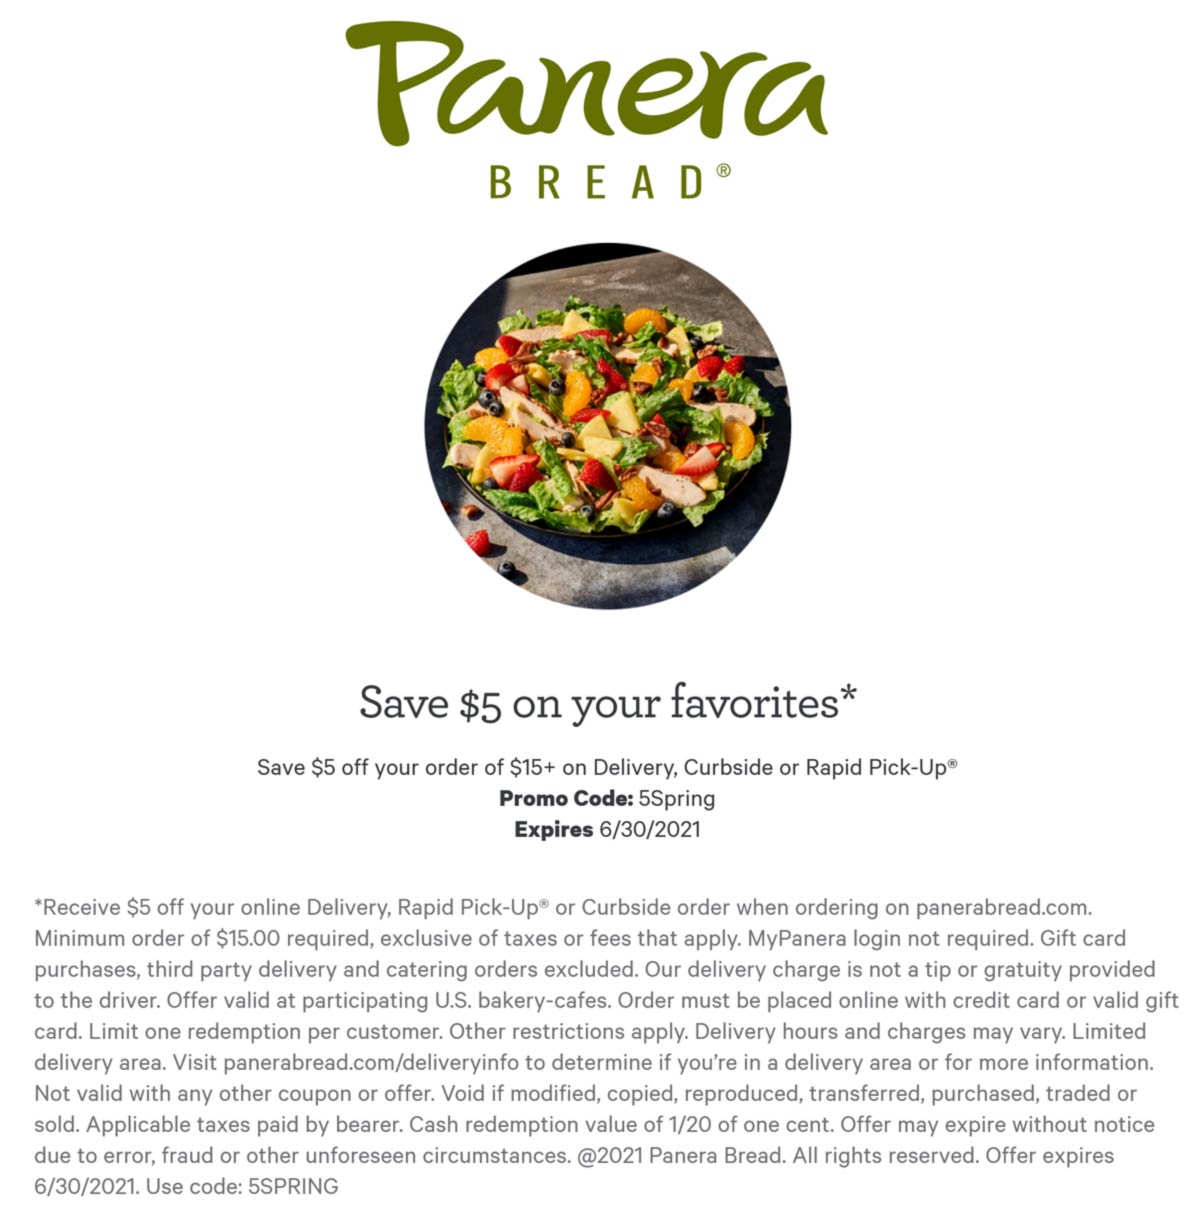 Panera Bread restaurants Coupon  $5 off $15 at Panera Bread restaurants via promo code 5SPRING #panerabread 